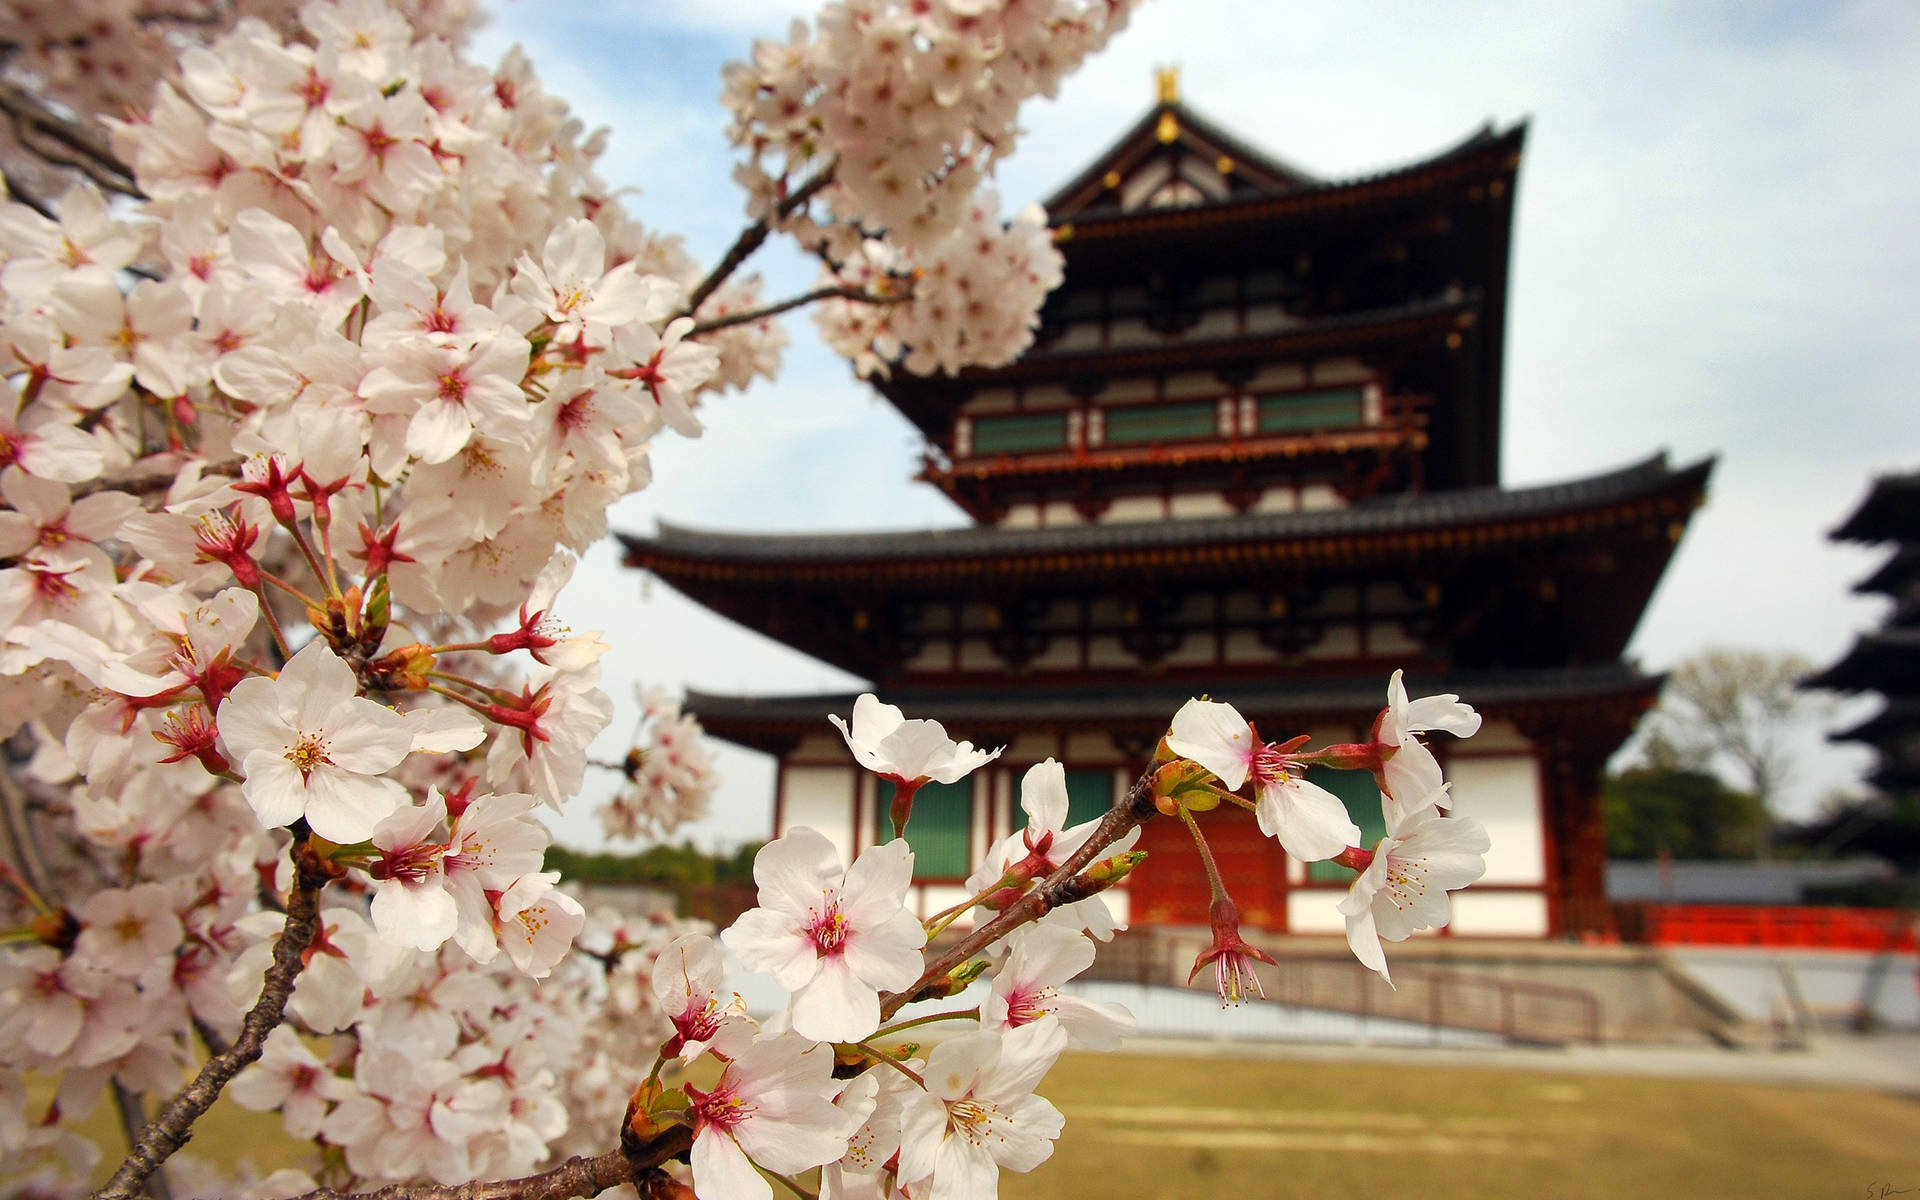 Unavista Cautivadora De Los Cerezos En Flor En Japón Fondo de pantalla